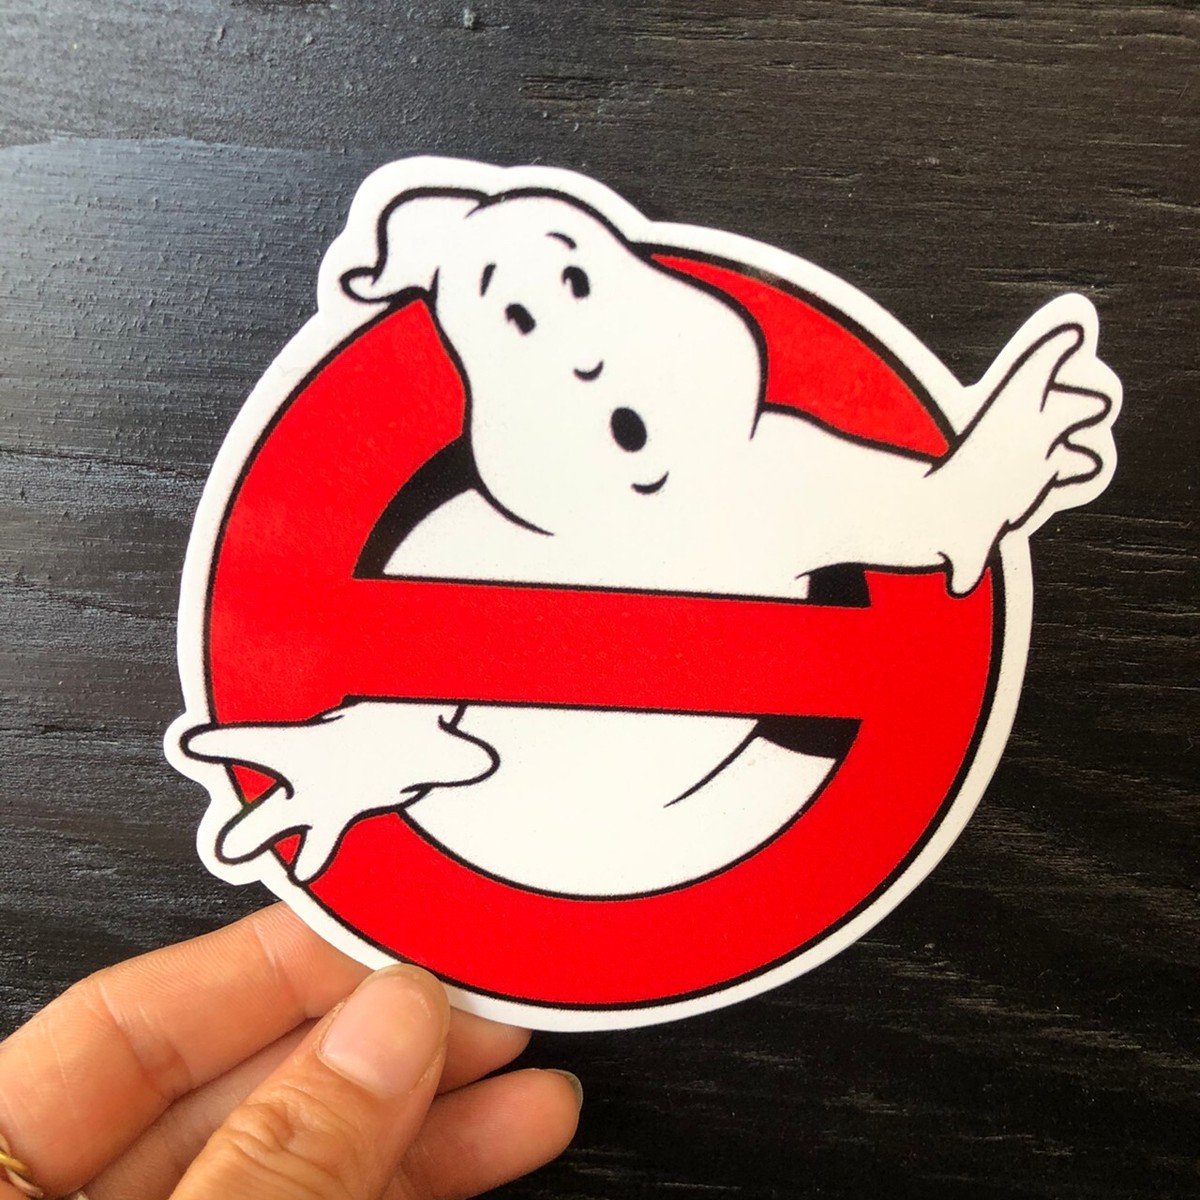 ゴーストバスターズ ステッカー Ghostbusters Sticker The Puppez E Shop ザ パペッツ松本 Webショップ